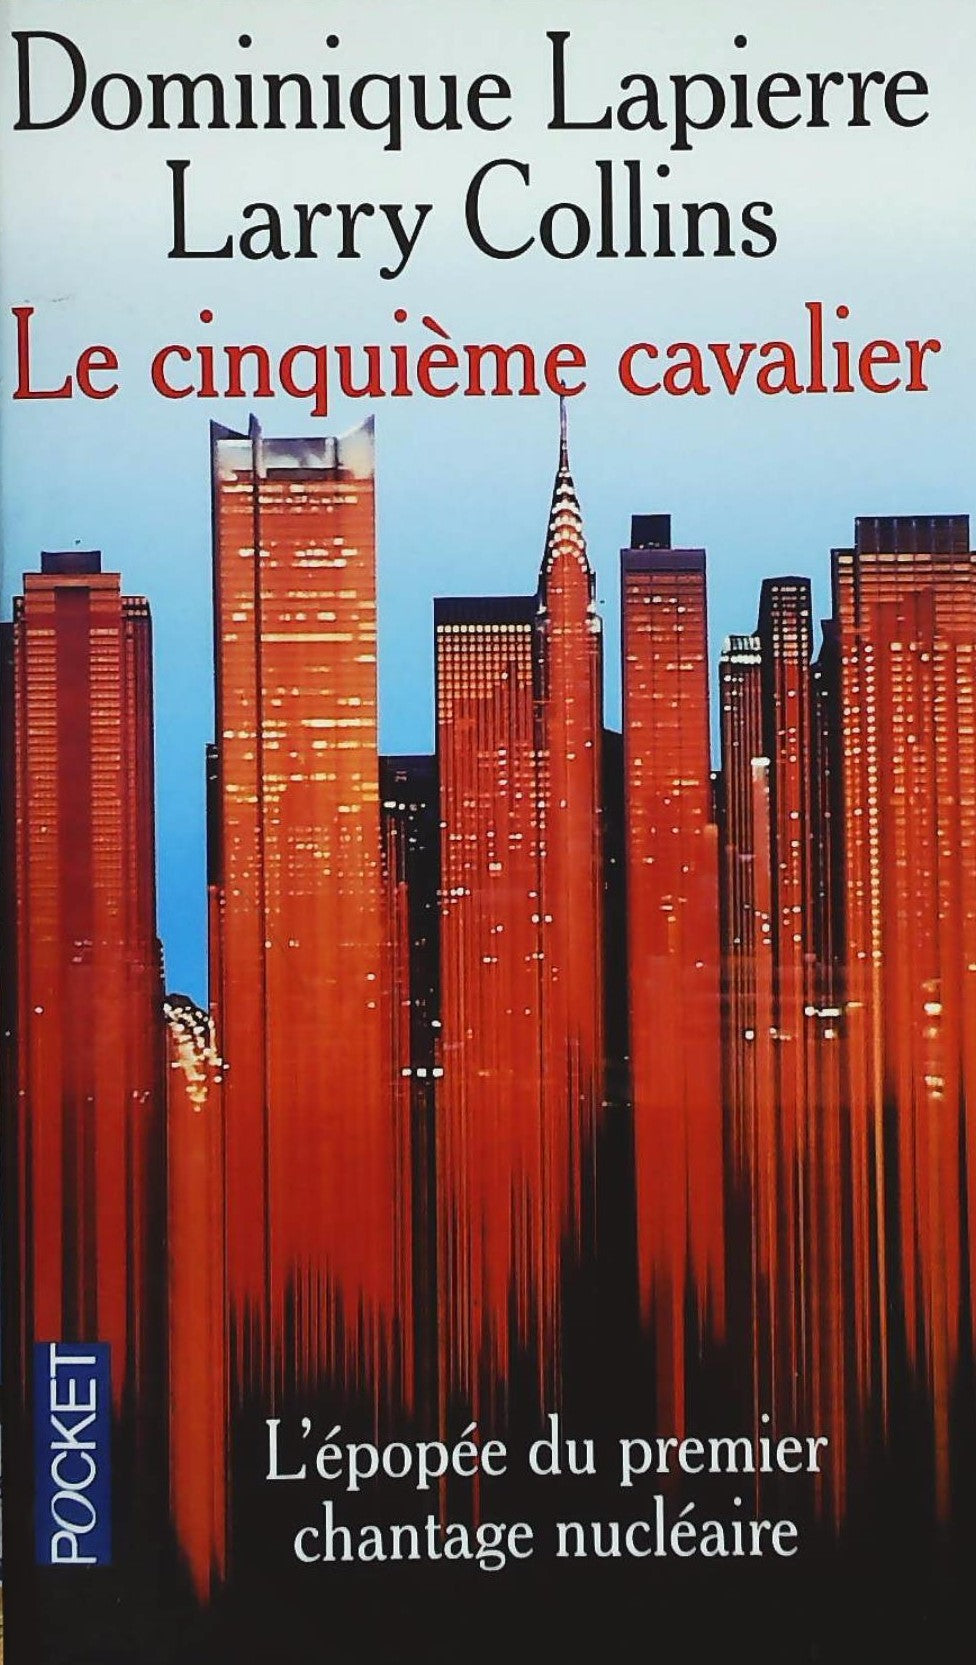 Livre ISBN 2266061364 Le cinquième cavalier (Dominique Lapierre)